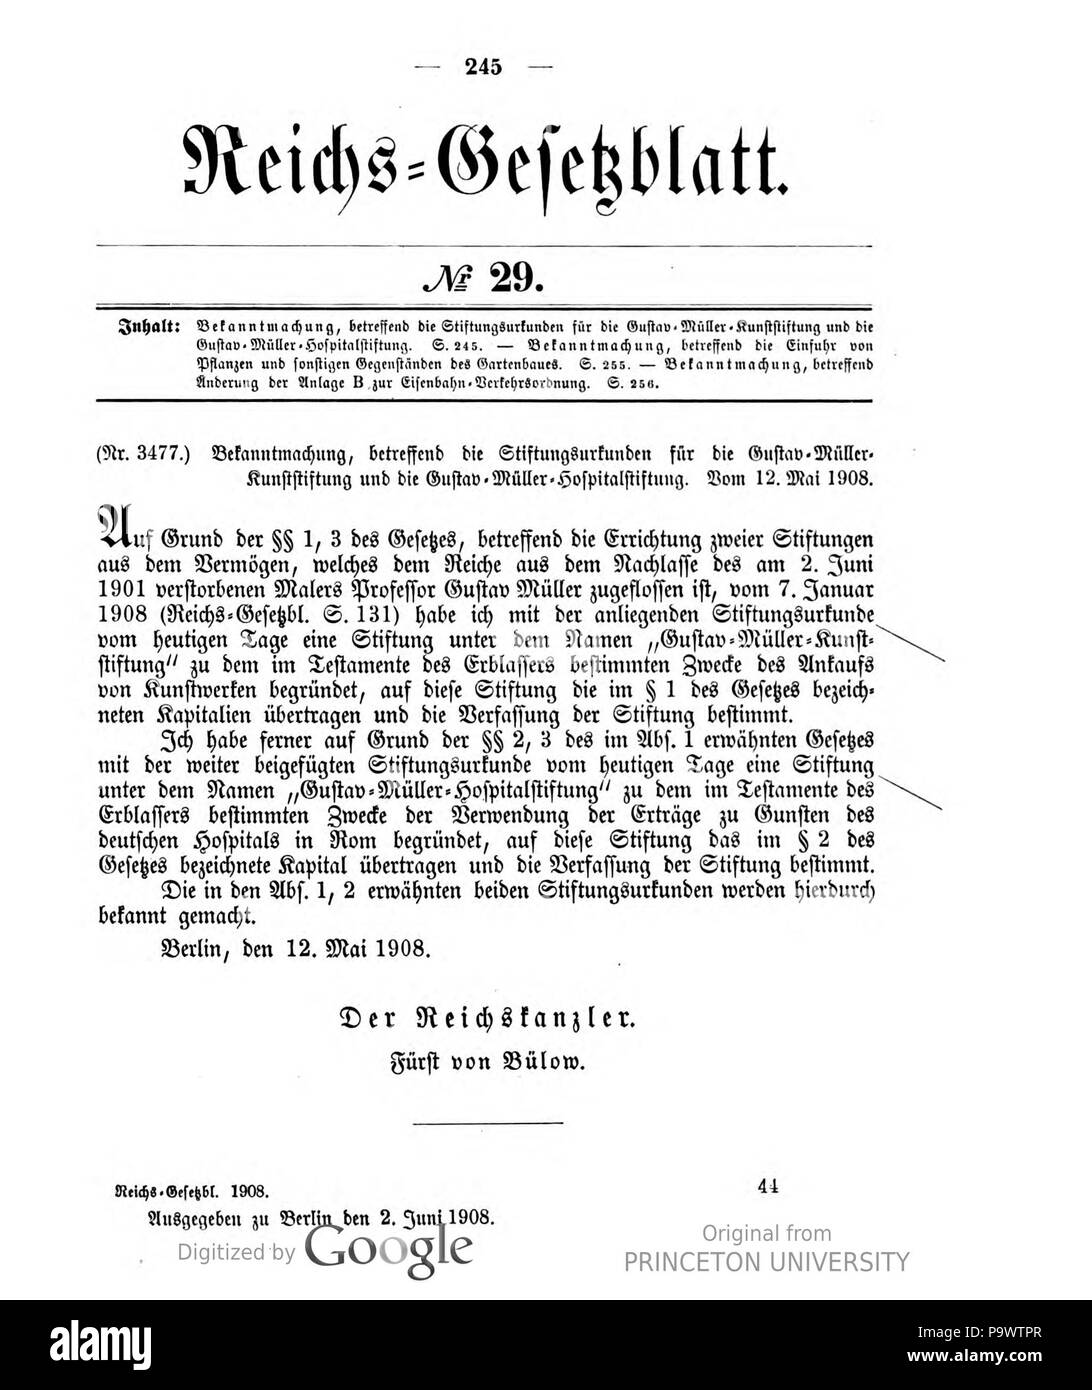 427 Deutsches Reichsgesetzblatt 1908 029 245 Stock Photo